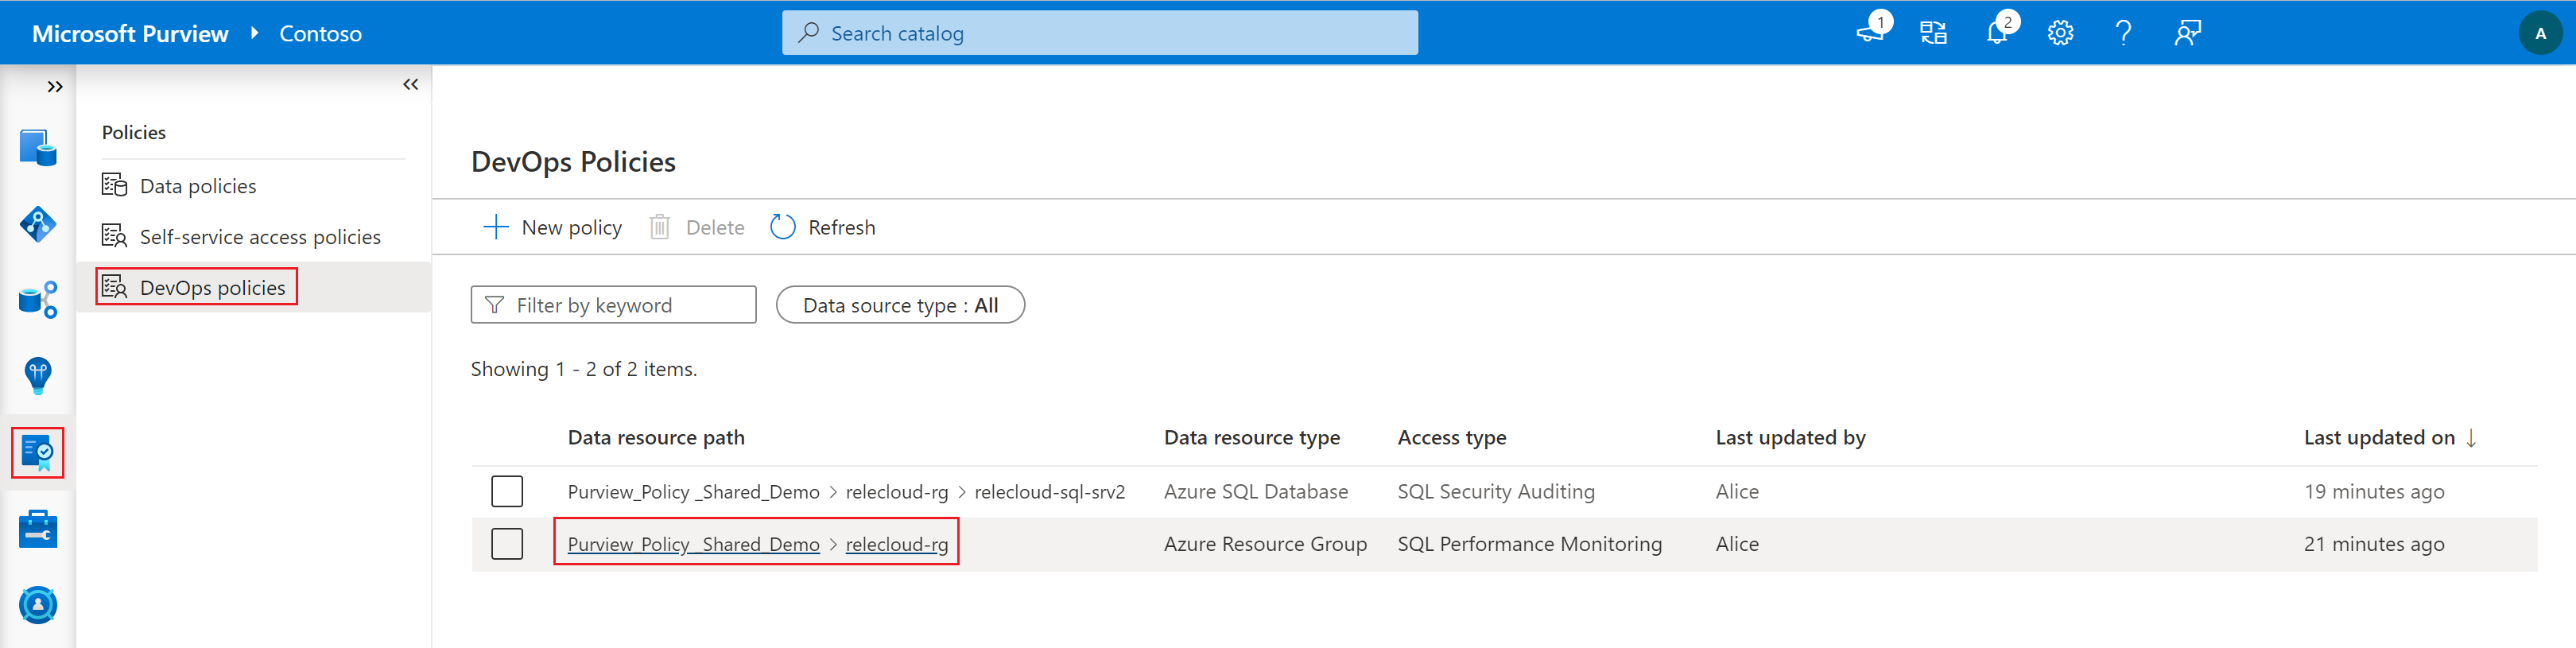 Captura de tela que mostra seleções para abrir políticas do SQL DevOps.